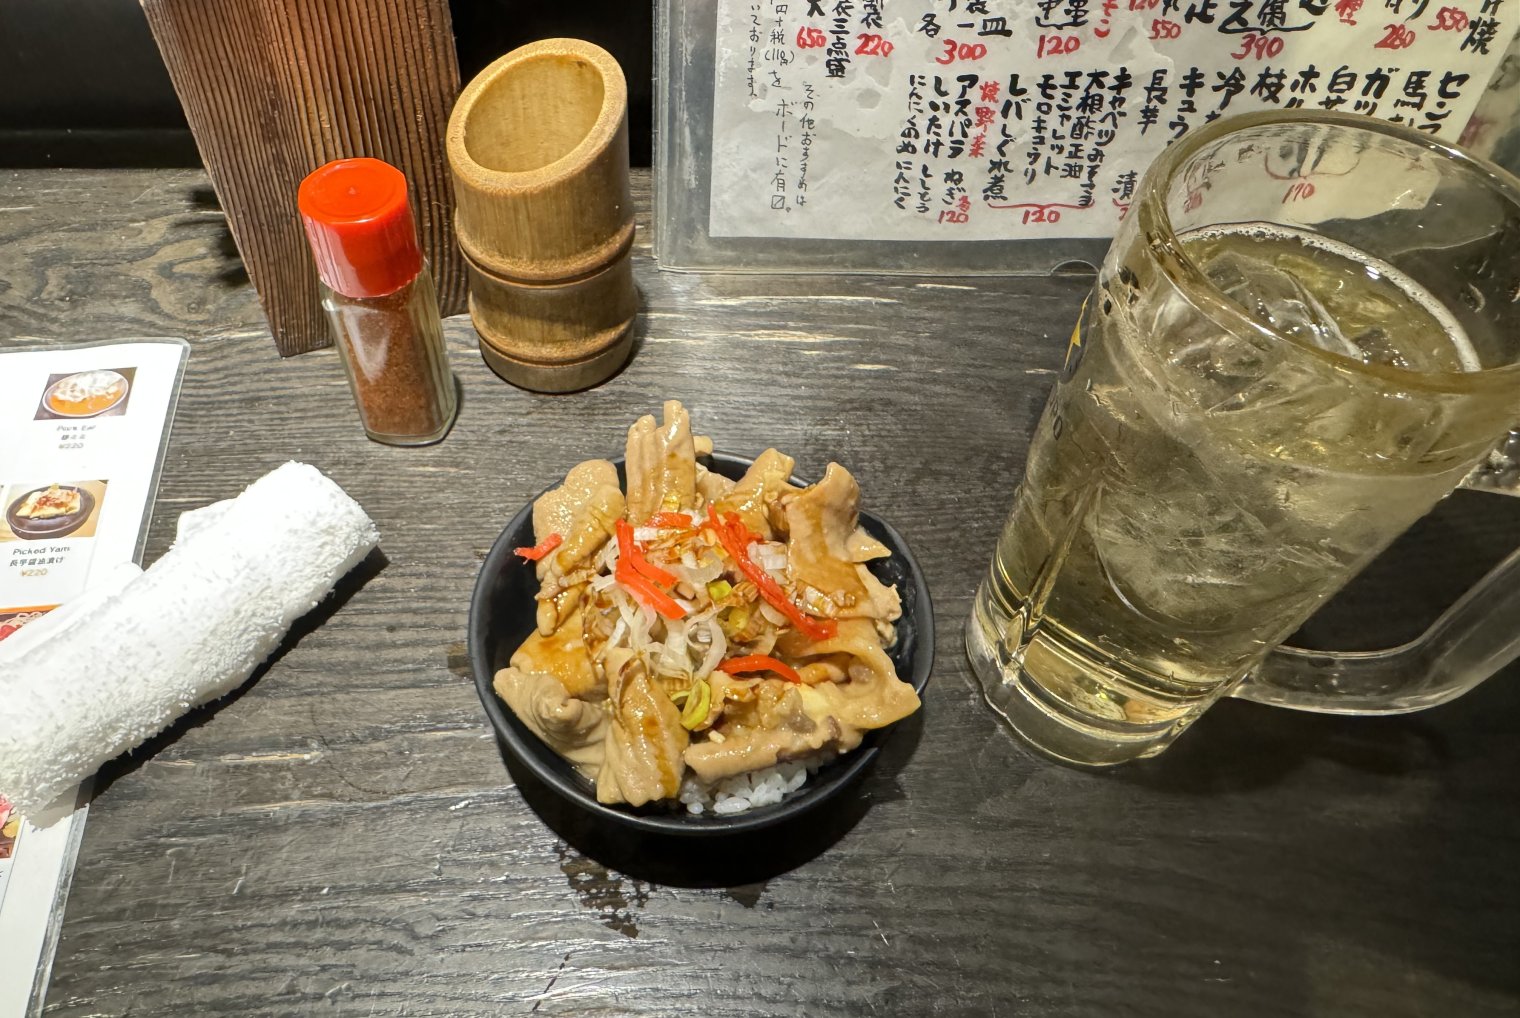 Meal and beverage at a Japanese Izakaya